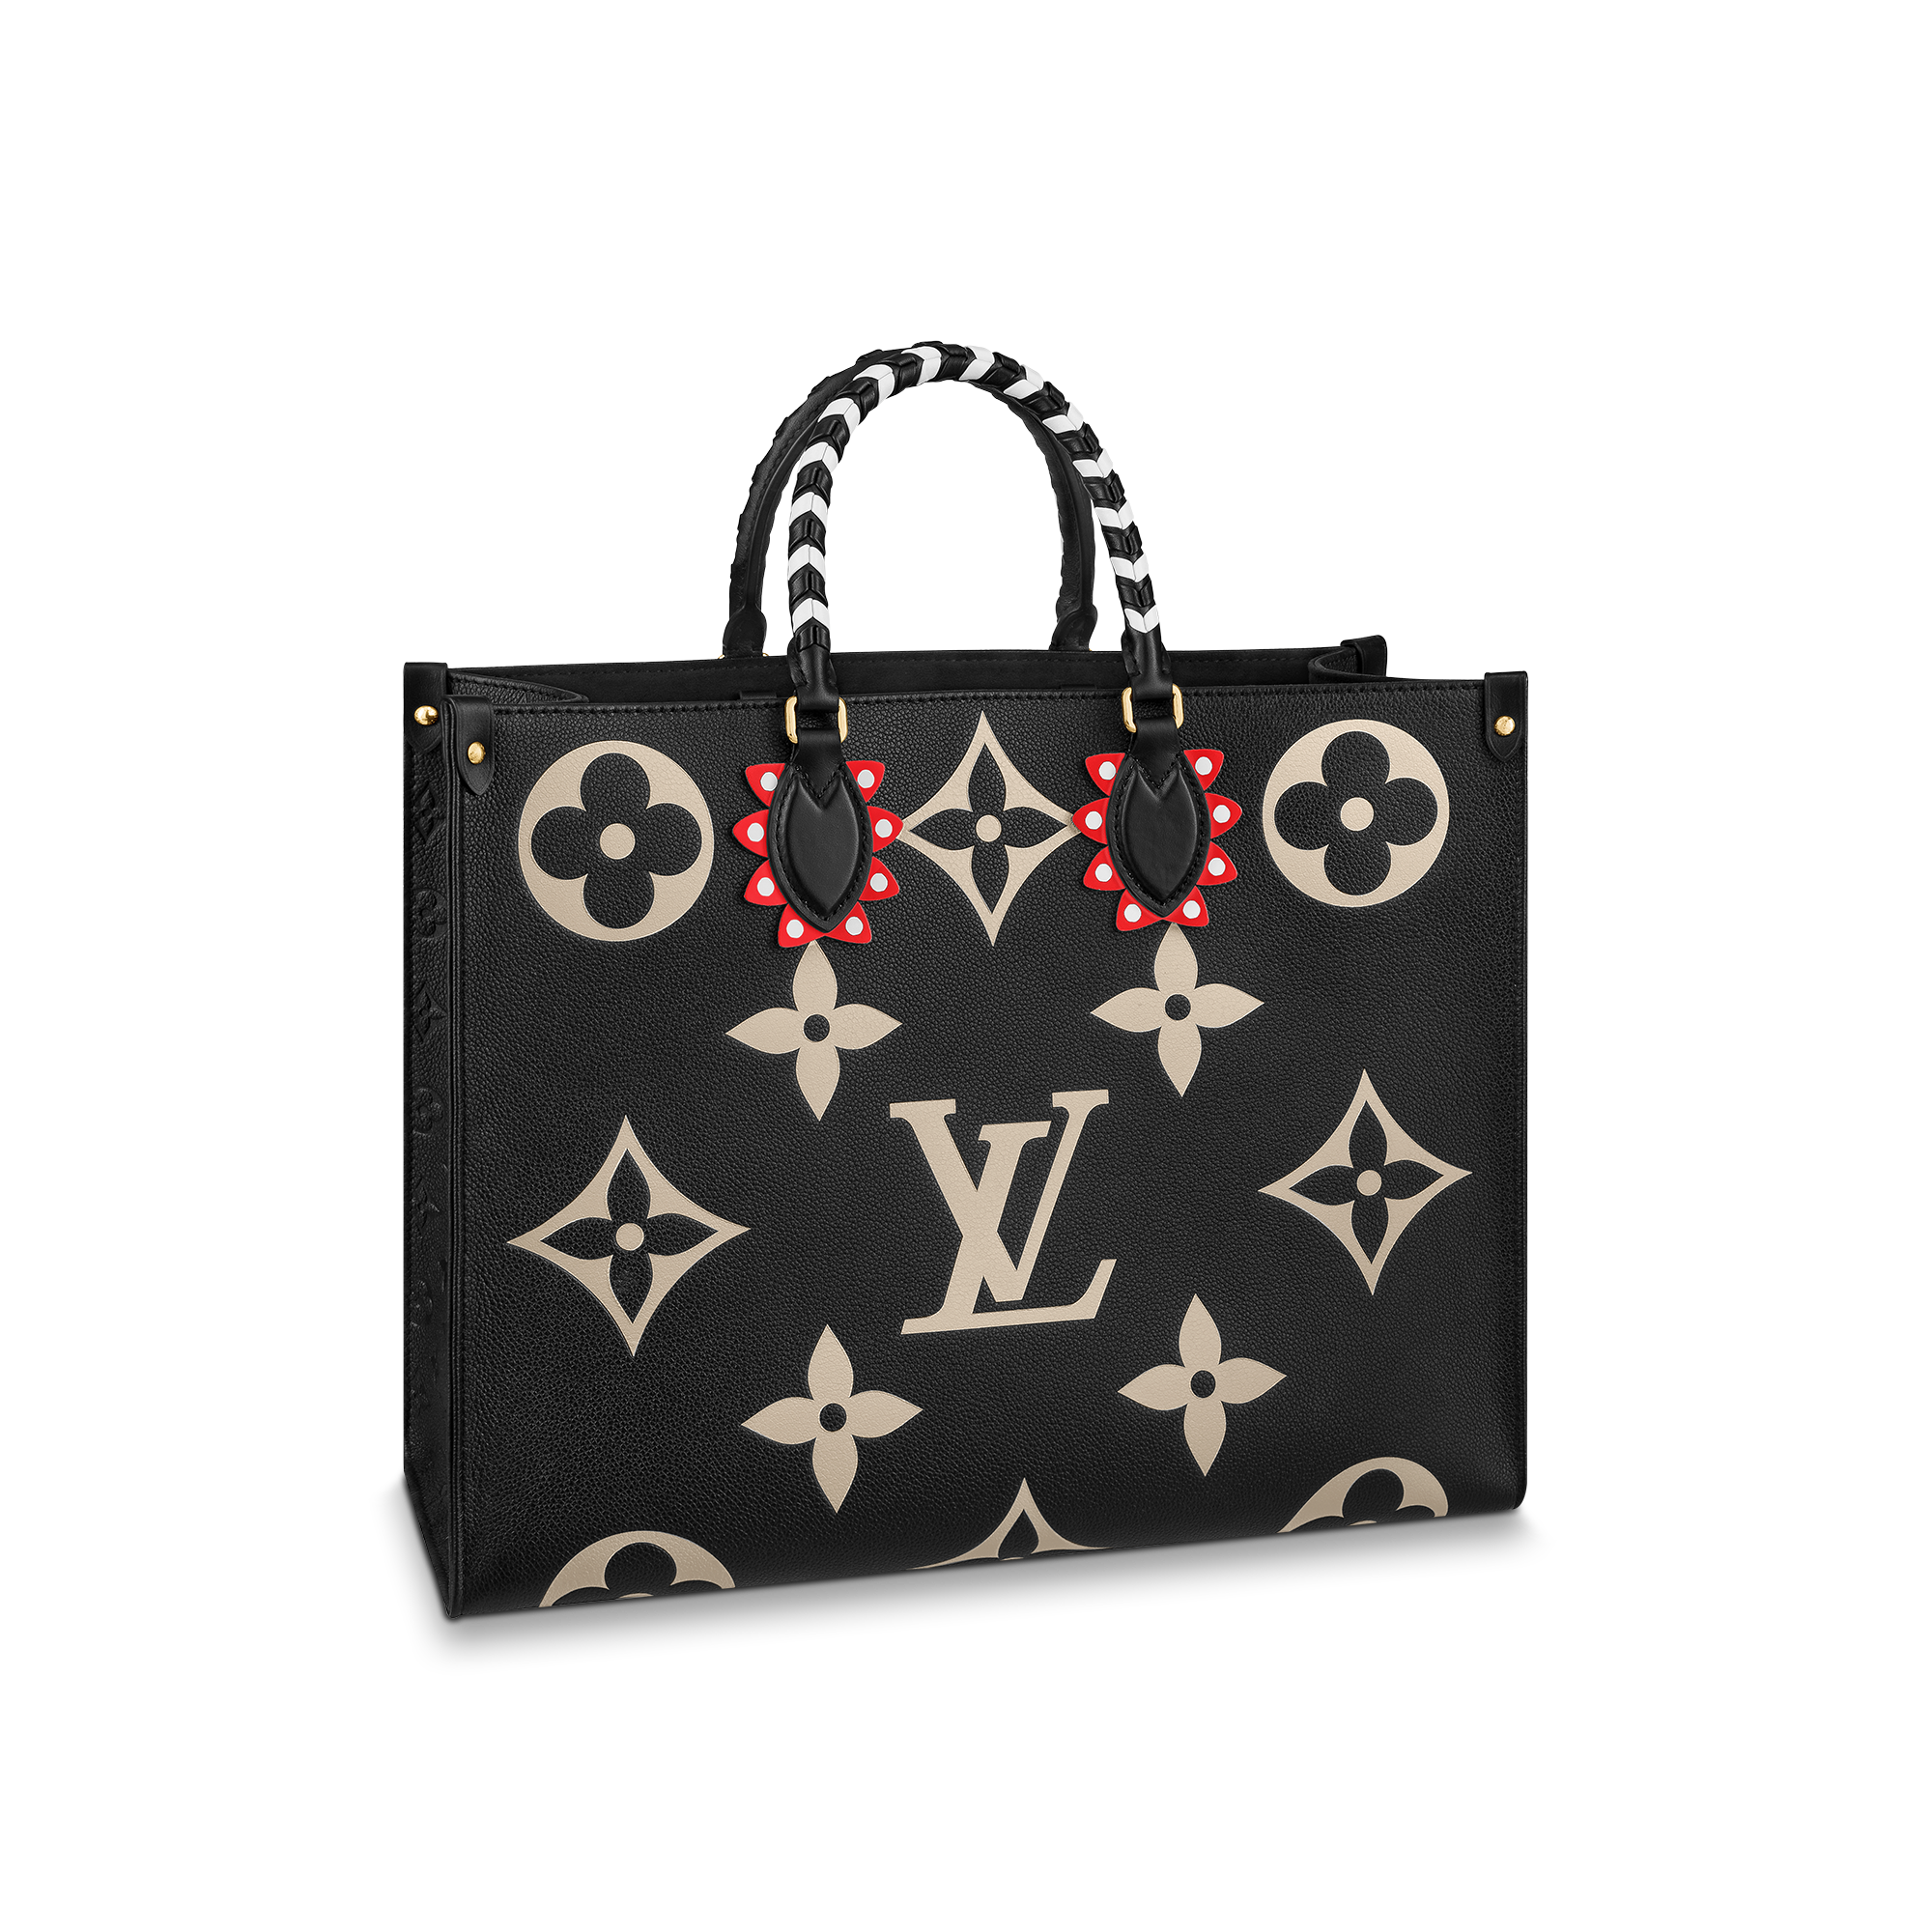 ルイ・ヴィトン」の新作バッグはグラフィカルな「LV クラフティ」